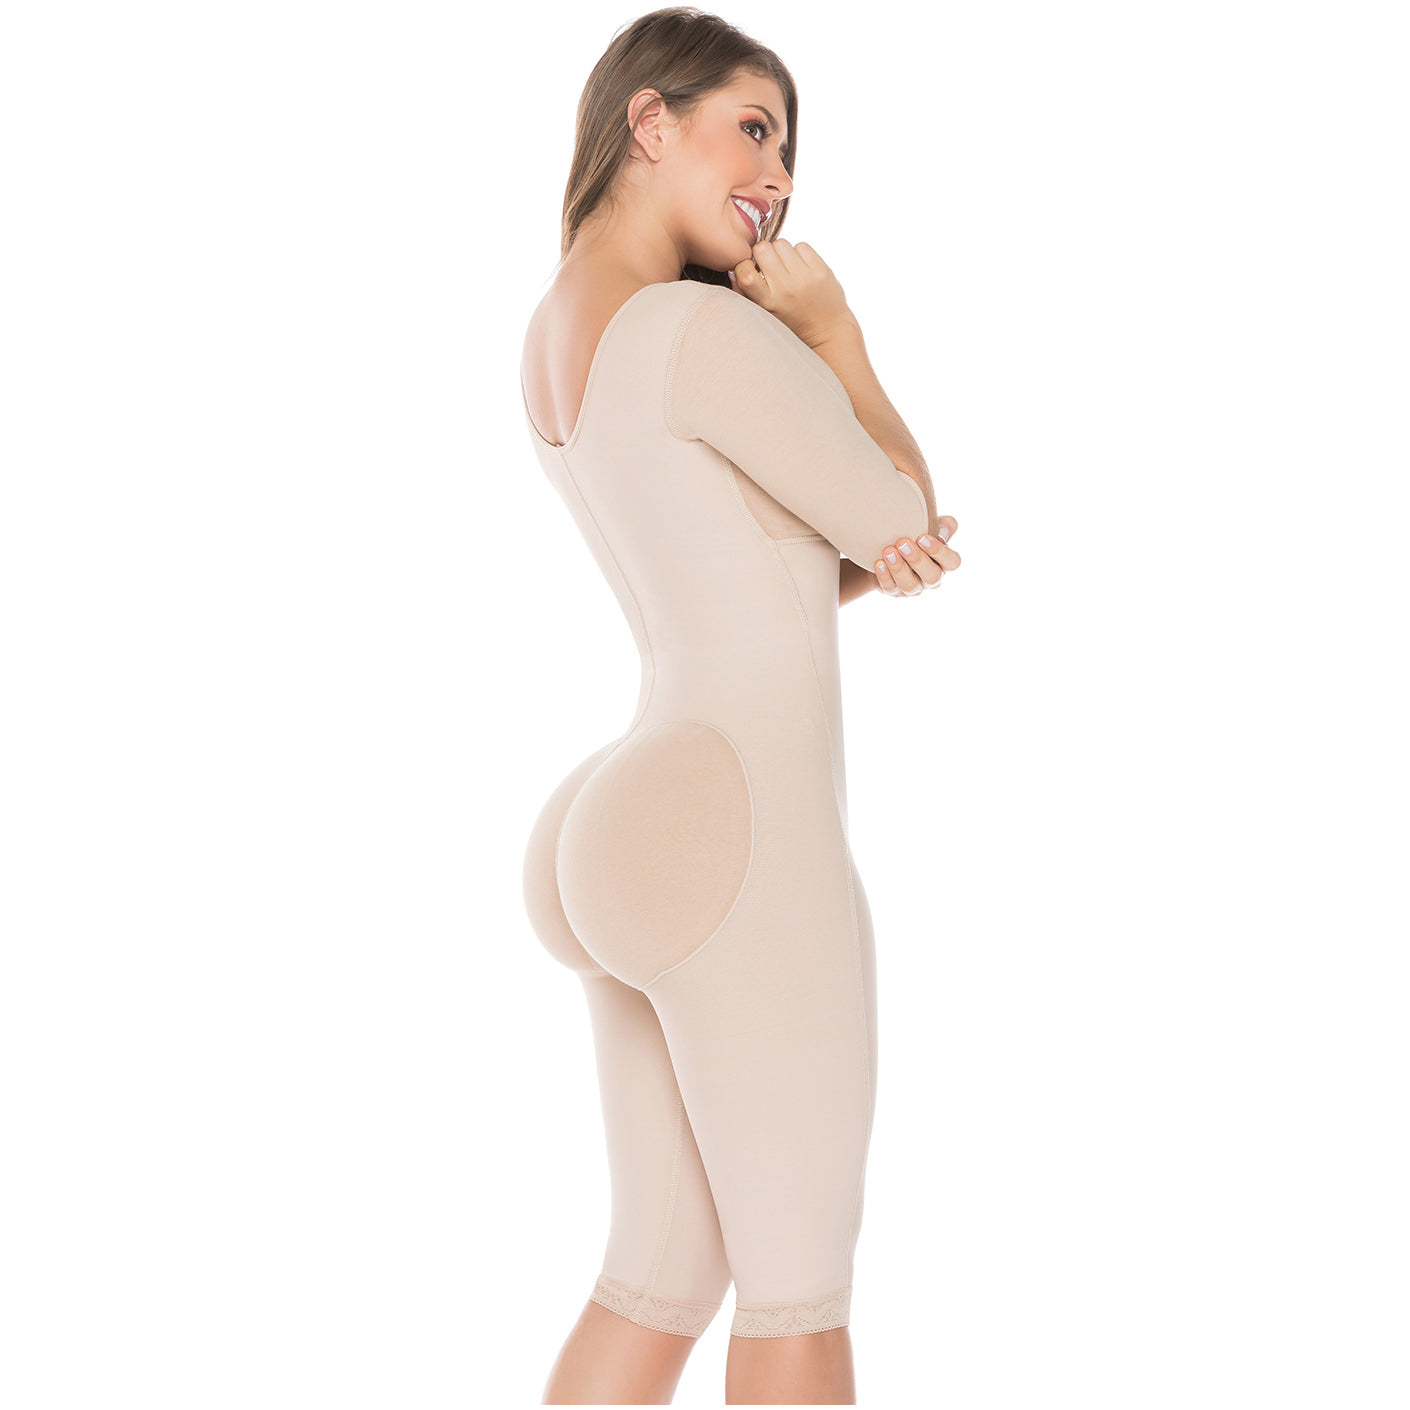 Fajas Salome 0525 - Women's Post Surgery Bodysuit Full Body Shaper